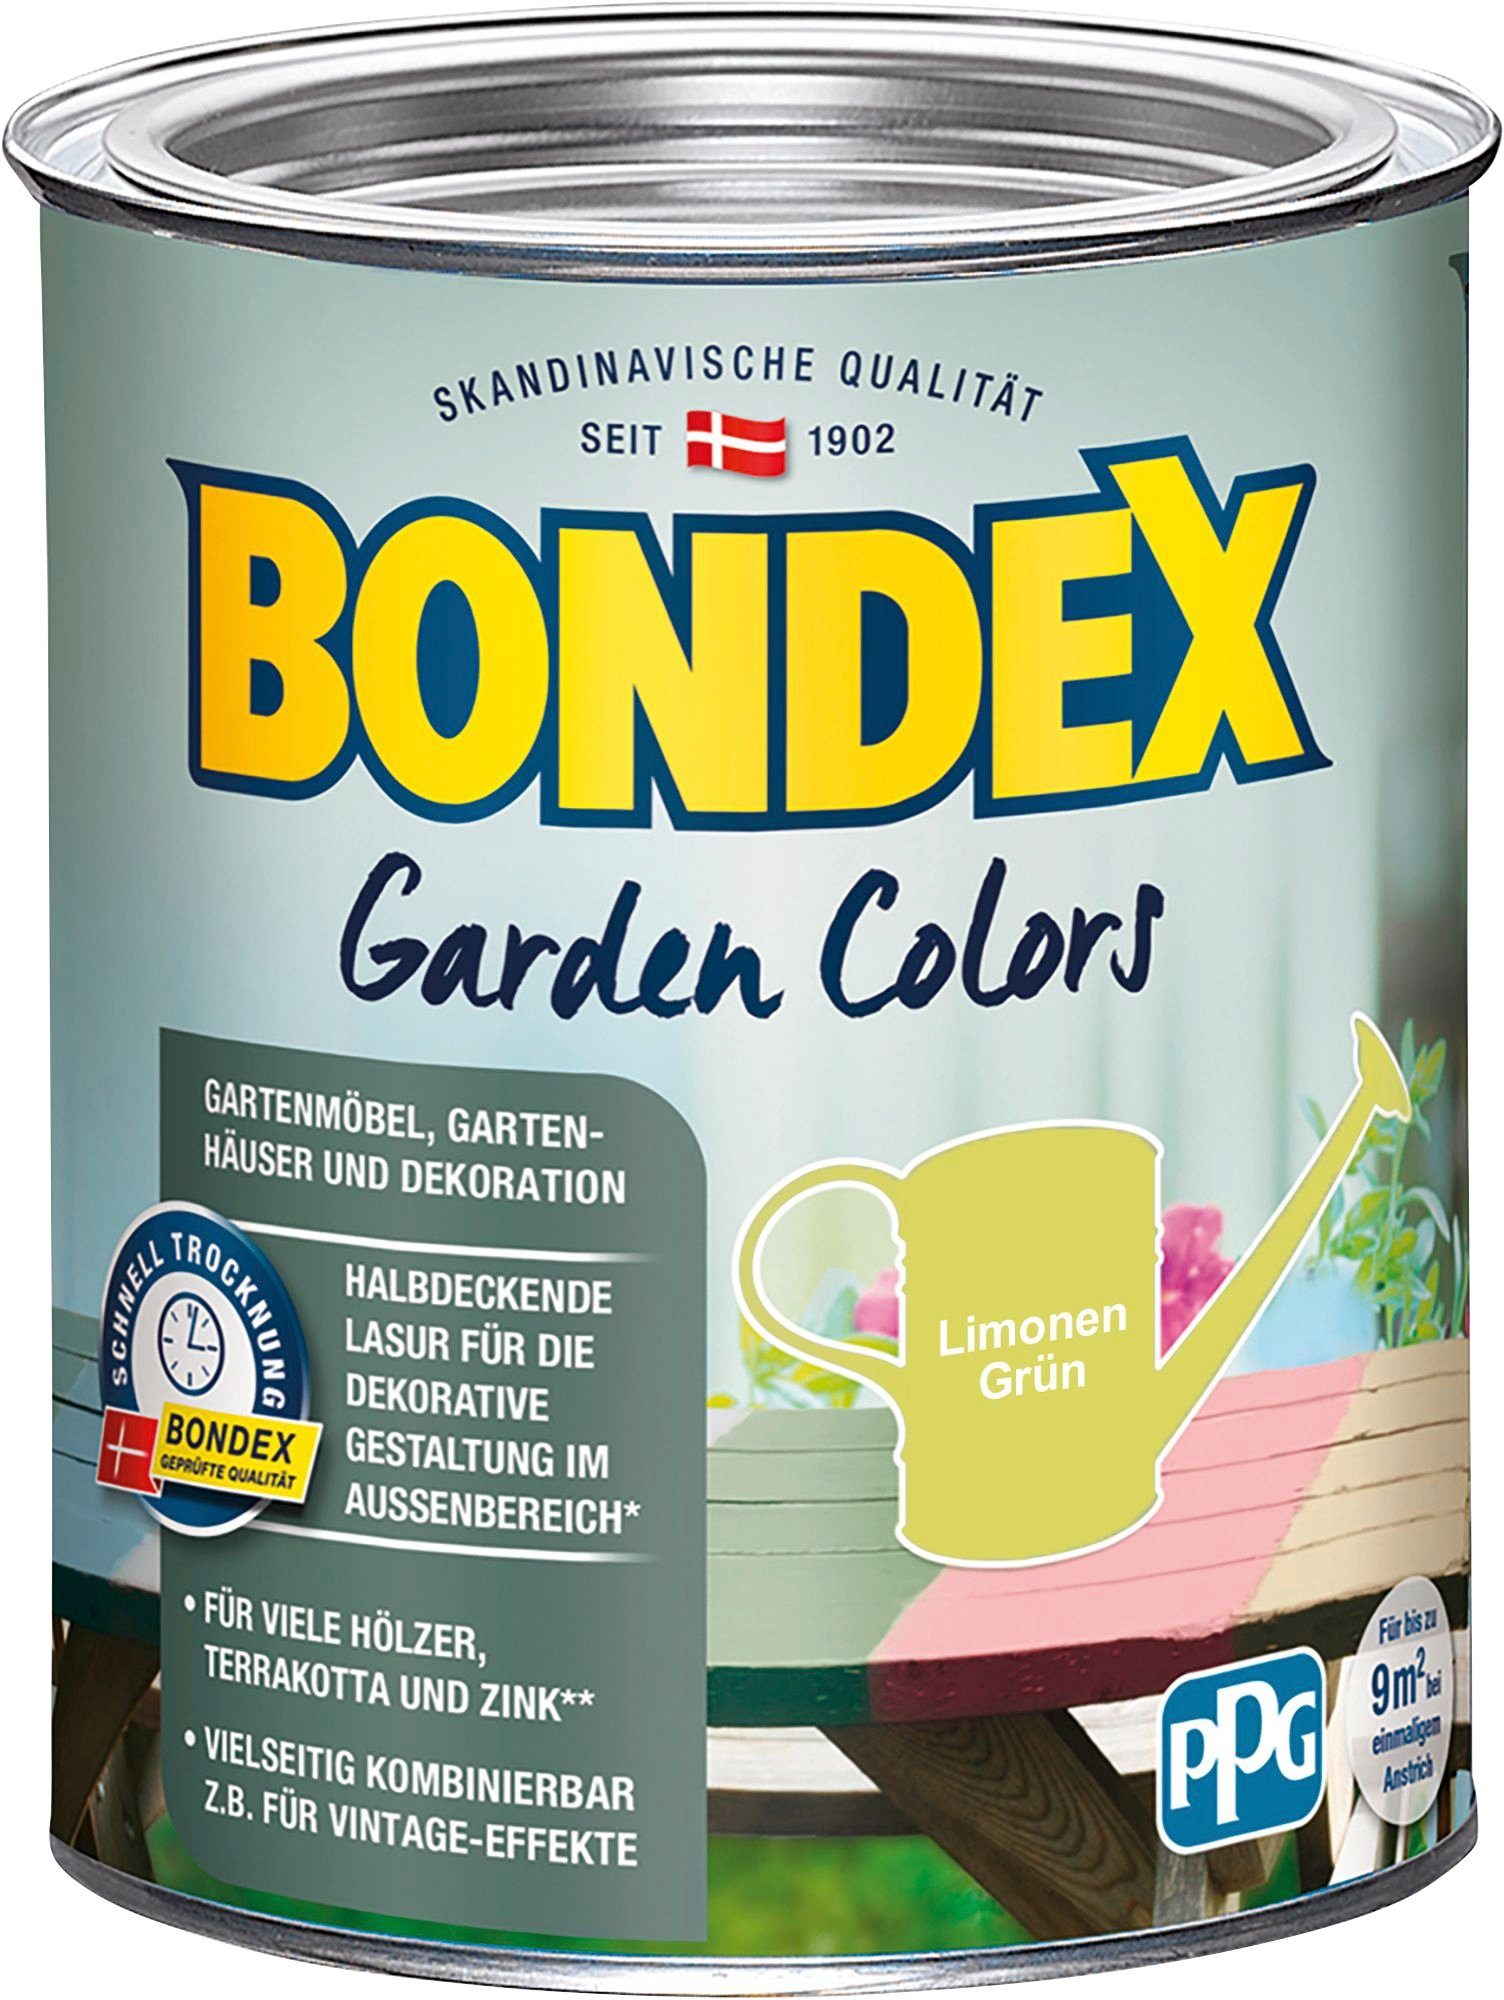 0,75 Inhalt Wetterschutzfarbe Liter Behagliches Bondex COLORS, Limonen Grün Grün, GARDEN